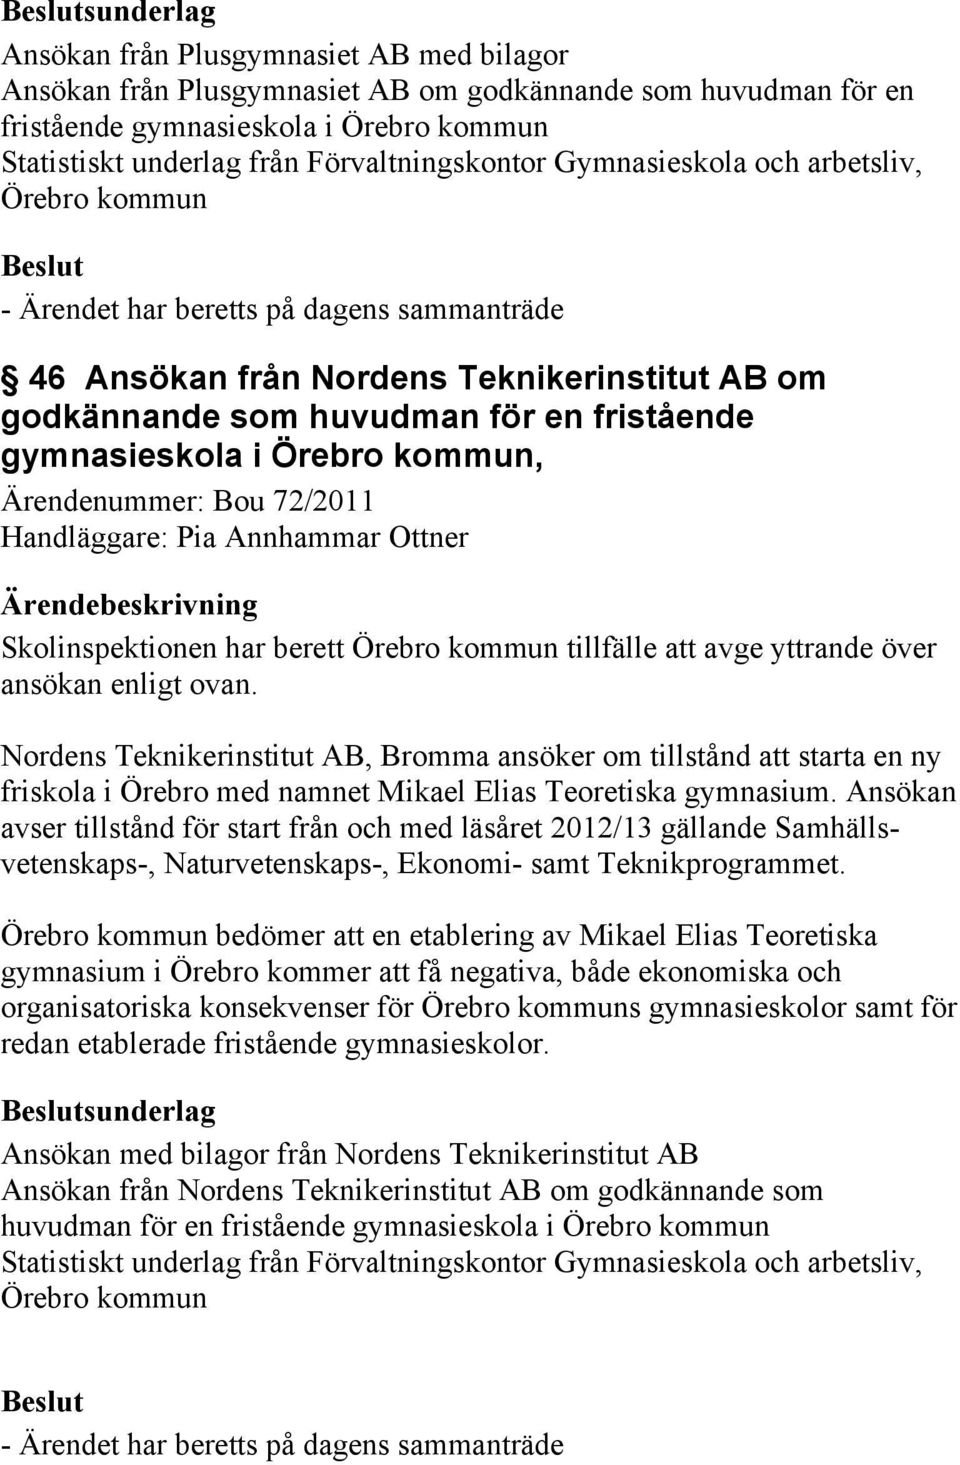 Bou 72/2011 Skolinspektionen har berett Örebro kommun tillfälle att avge yttrande över ansökan enligt ovan.